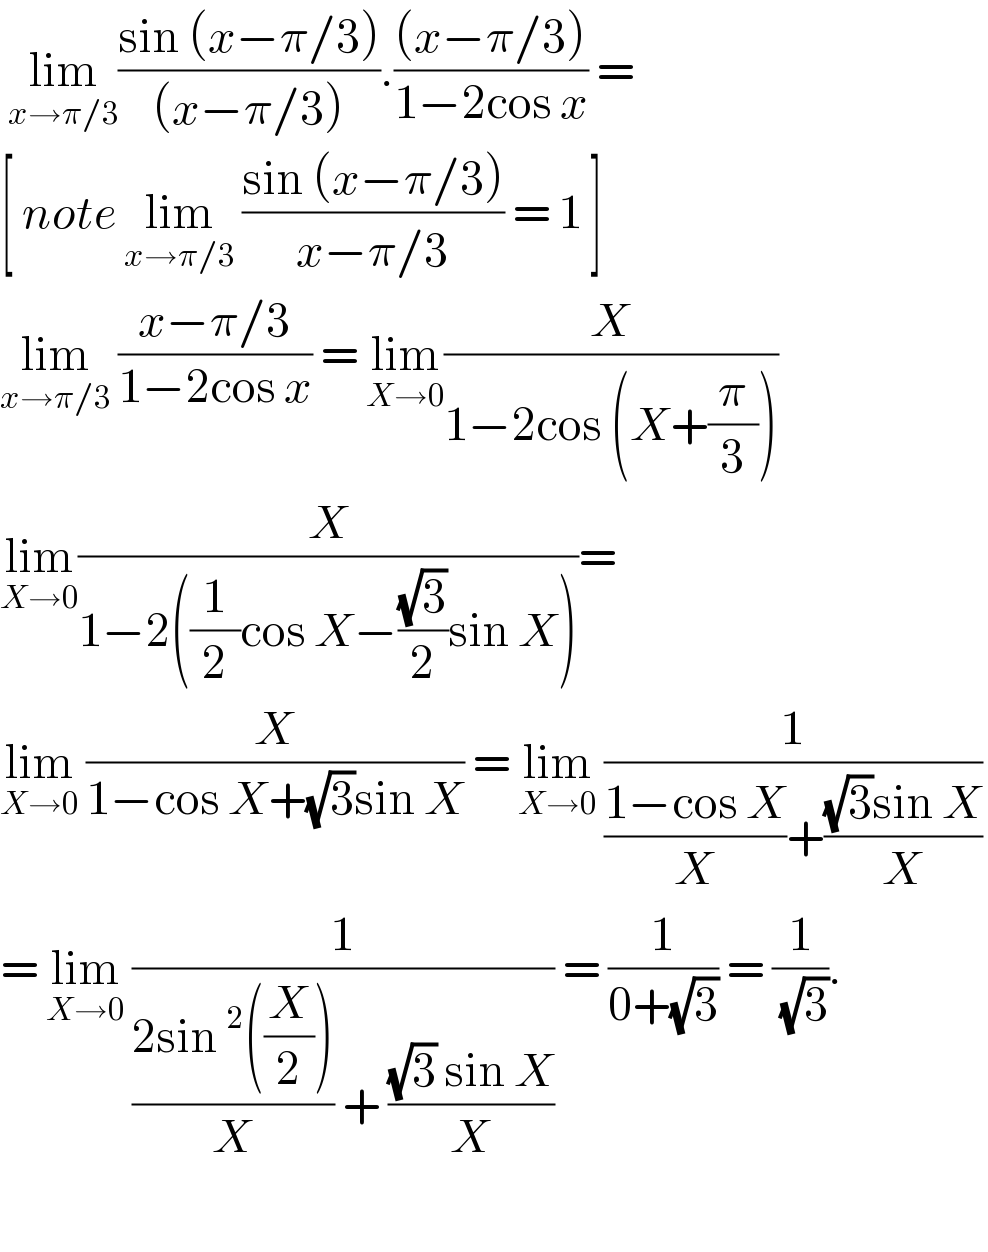  lim_(x→π/3) ((sin (x−π/3))/((x−π/3))).(((x−π/3))/(1−2cos x)) =   [ note lim_(x→π/3)  ((sin (x−π/3))/(x−π/3)) = 1 ]  lim_(x→π/3)  ((x−π/3)/(1−2cos x)) = lim_(X→0) (X/(1−2cos (X+(π/3))))  lim_(X→0) (X/(1−2((1/2)cos X−((√3)/2)sin X)))=  lim_(X→0)  (X/(1−cos X+(√3)sin X)) = lim_(X→0)  (1/(((1−cos X)/X)+(((√3)sin X)/X)))  = lim_(X→0)  (1/(((2sin^2 ((X/2)))/X) + (((√3) sin X)/X))) = (1/(0+(√3))) = (1/( (√3))).    